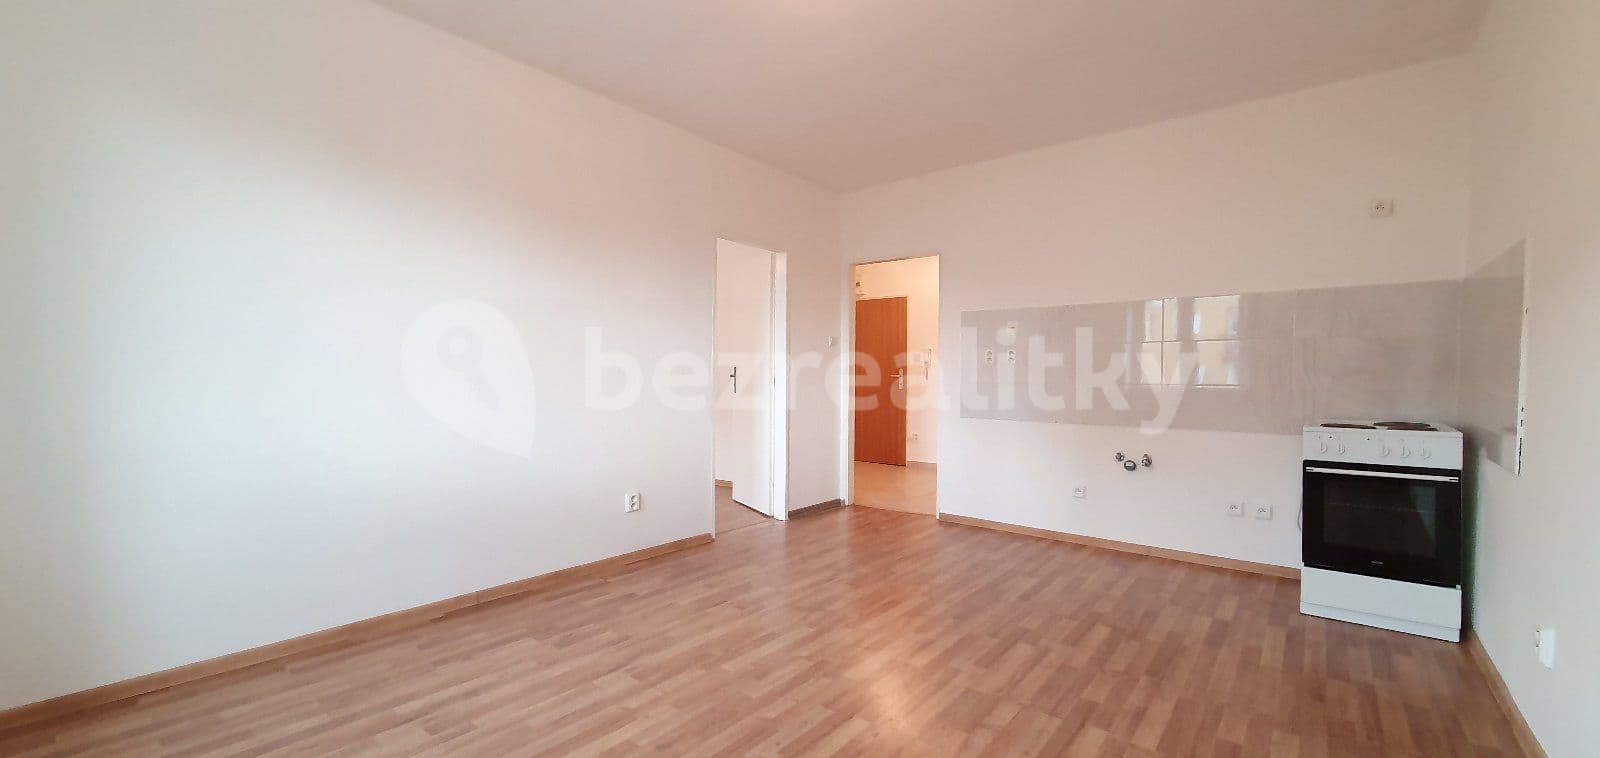 1 bedroom flat to rent, 41 m², Hlavní třída, Havířov, Moravskoslezský Region